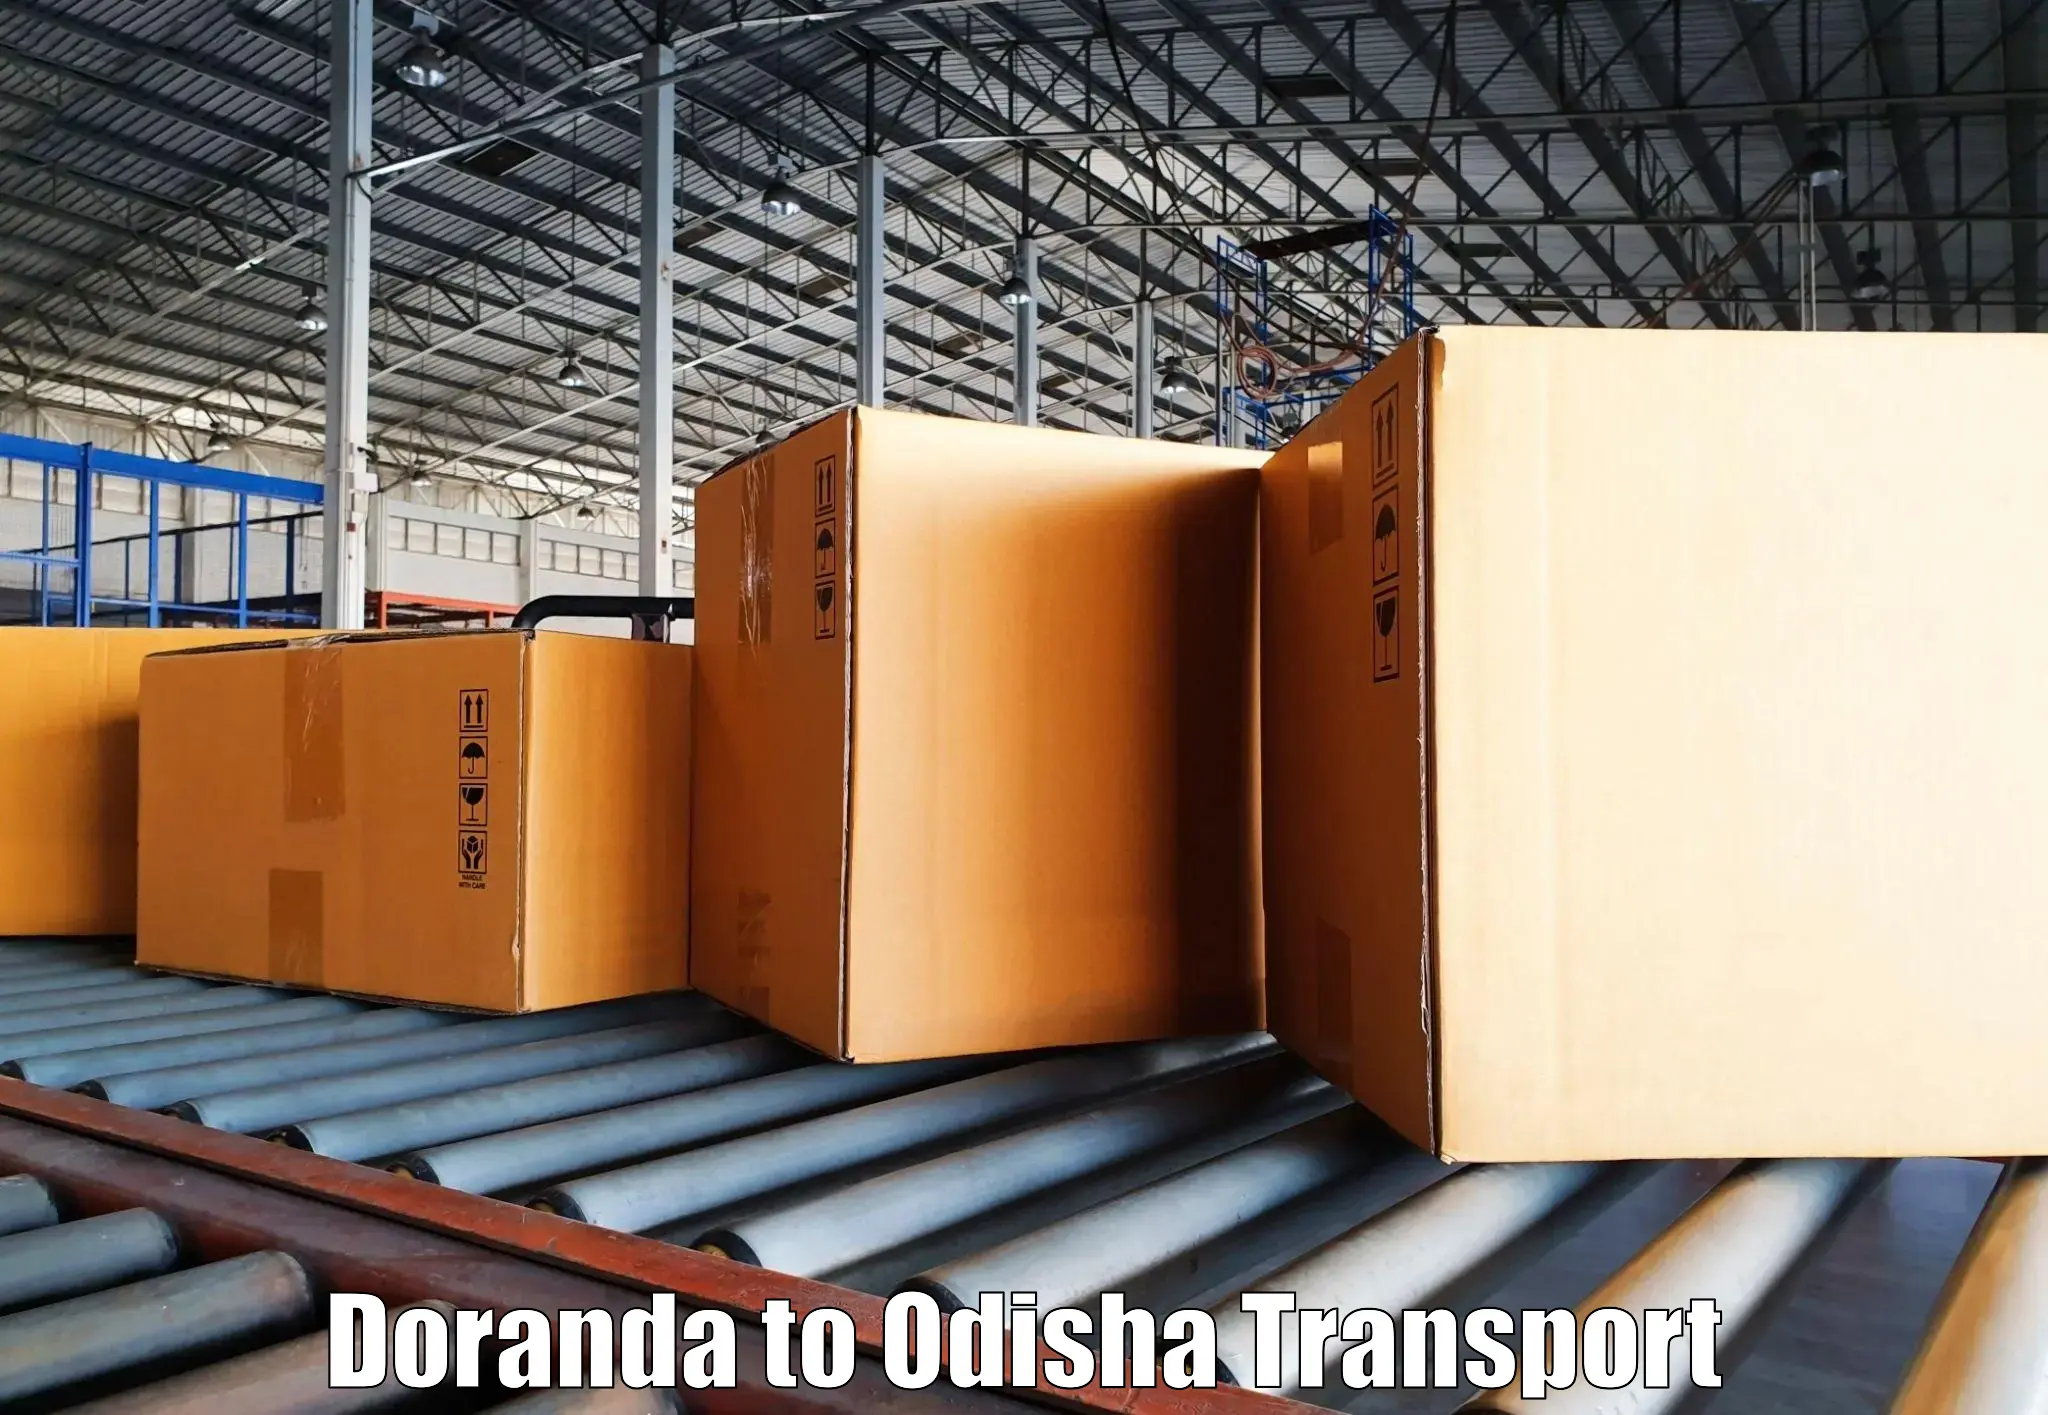 Road transport online services in Doranda to Chandinchowk